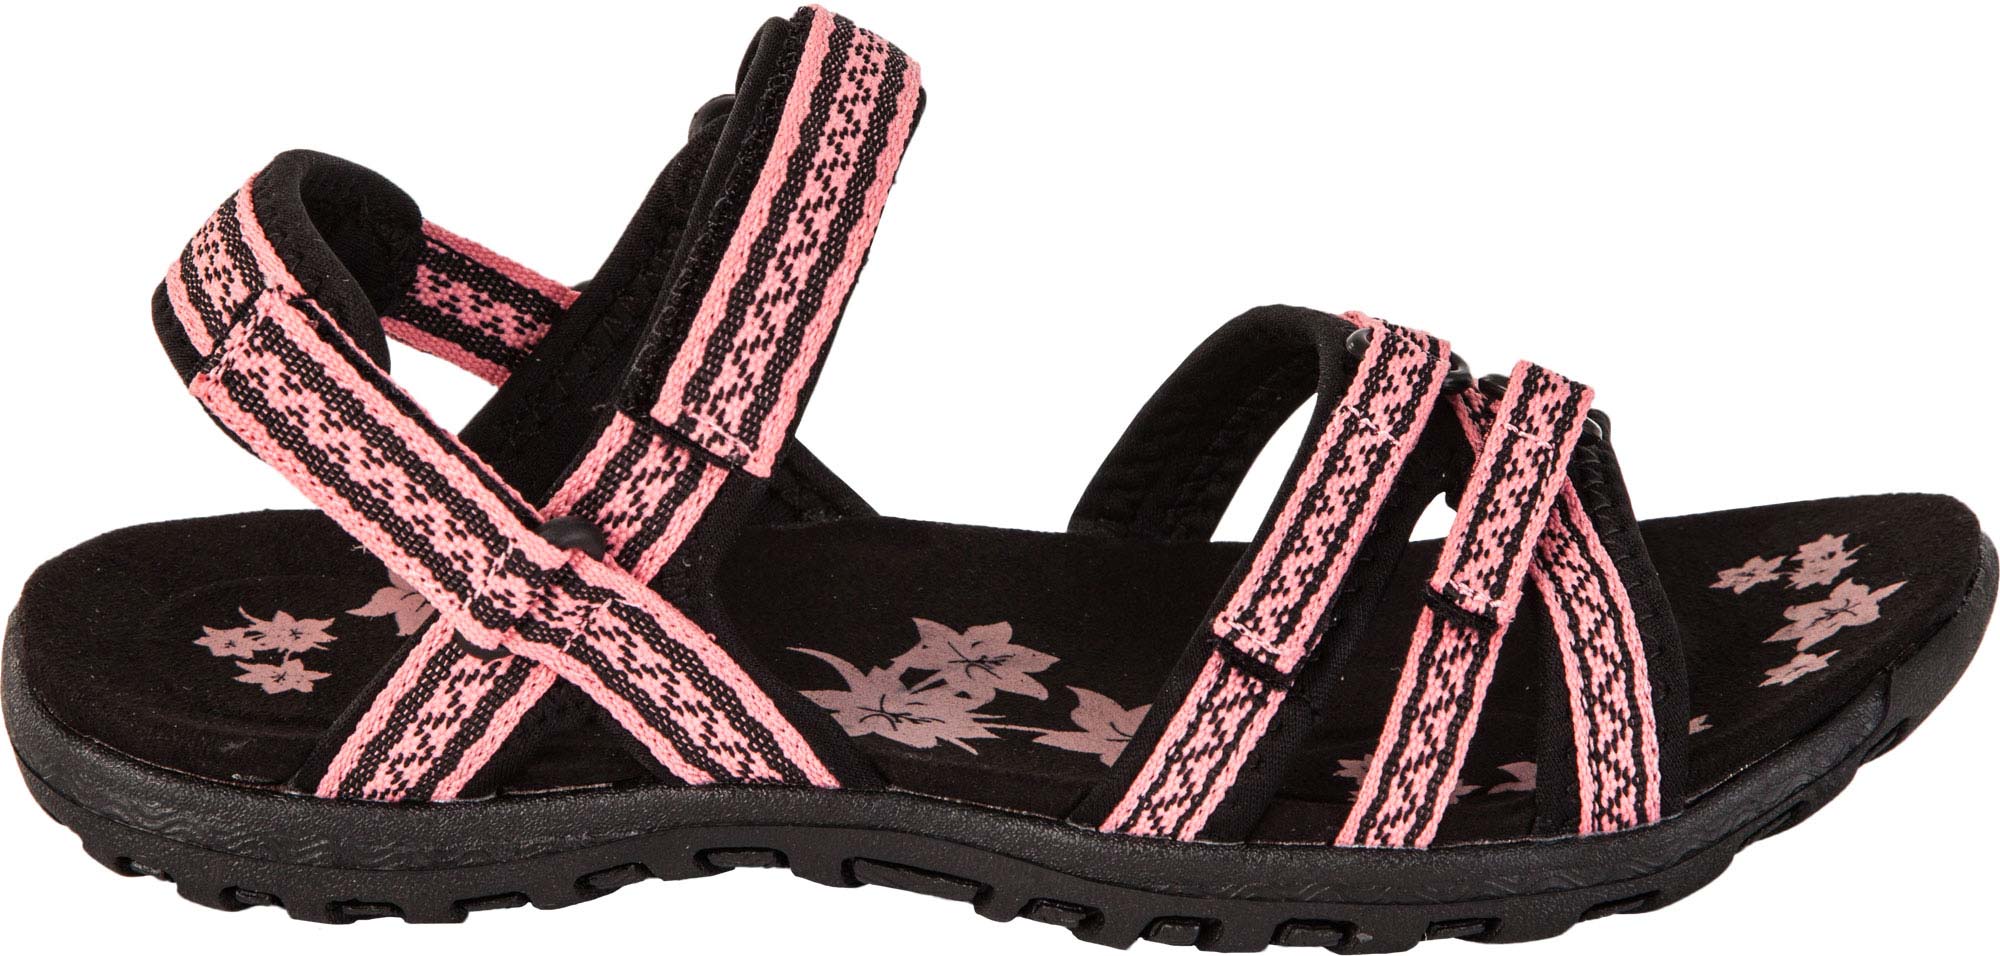 Women’s outdoor summer sandals